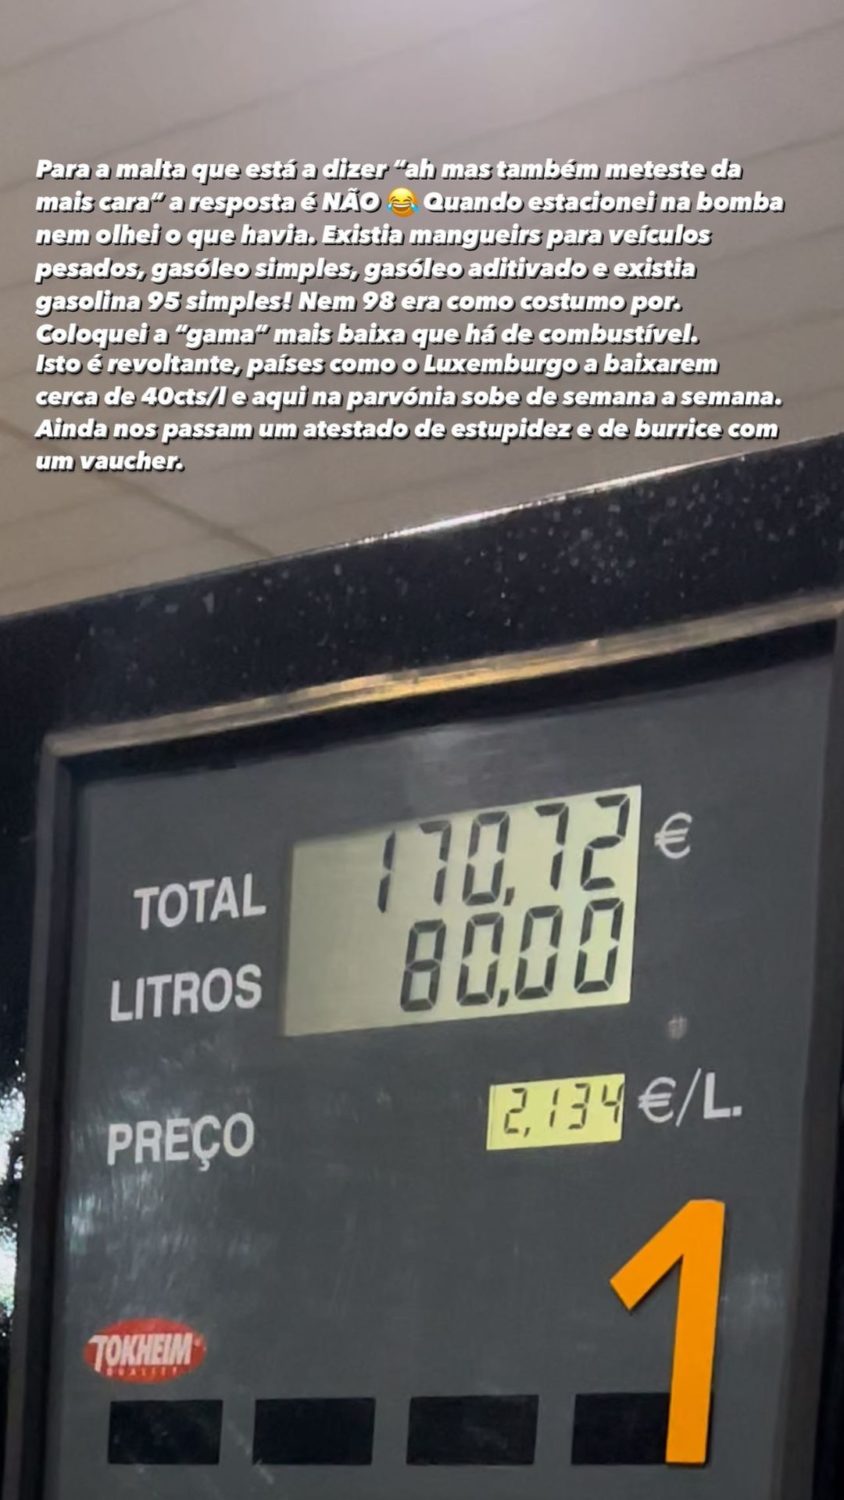 Fernando Daniel revoltado com aumento dos combustíveis: &#8220;Grande Costa! Assim é que é!&#8221;